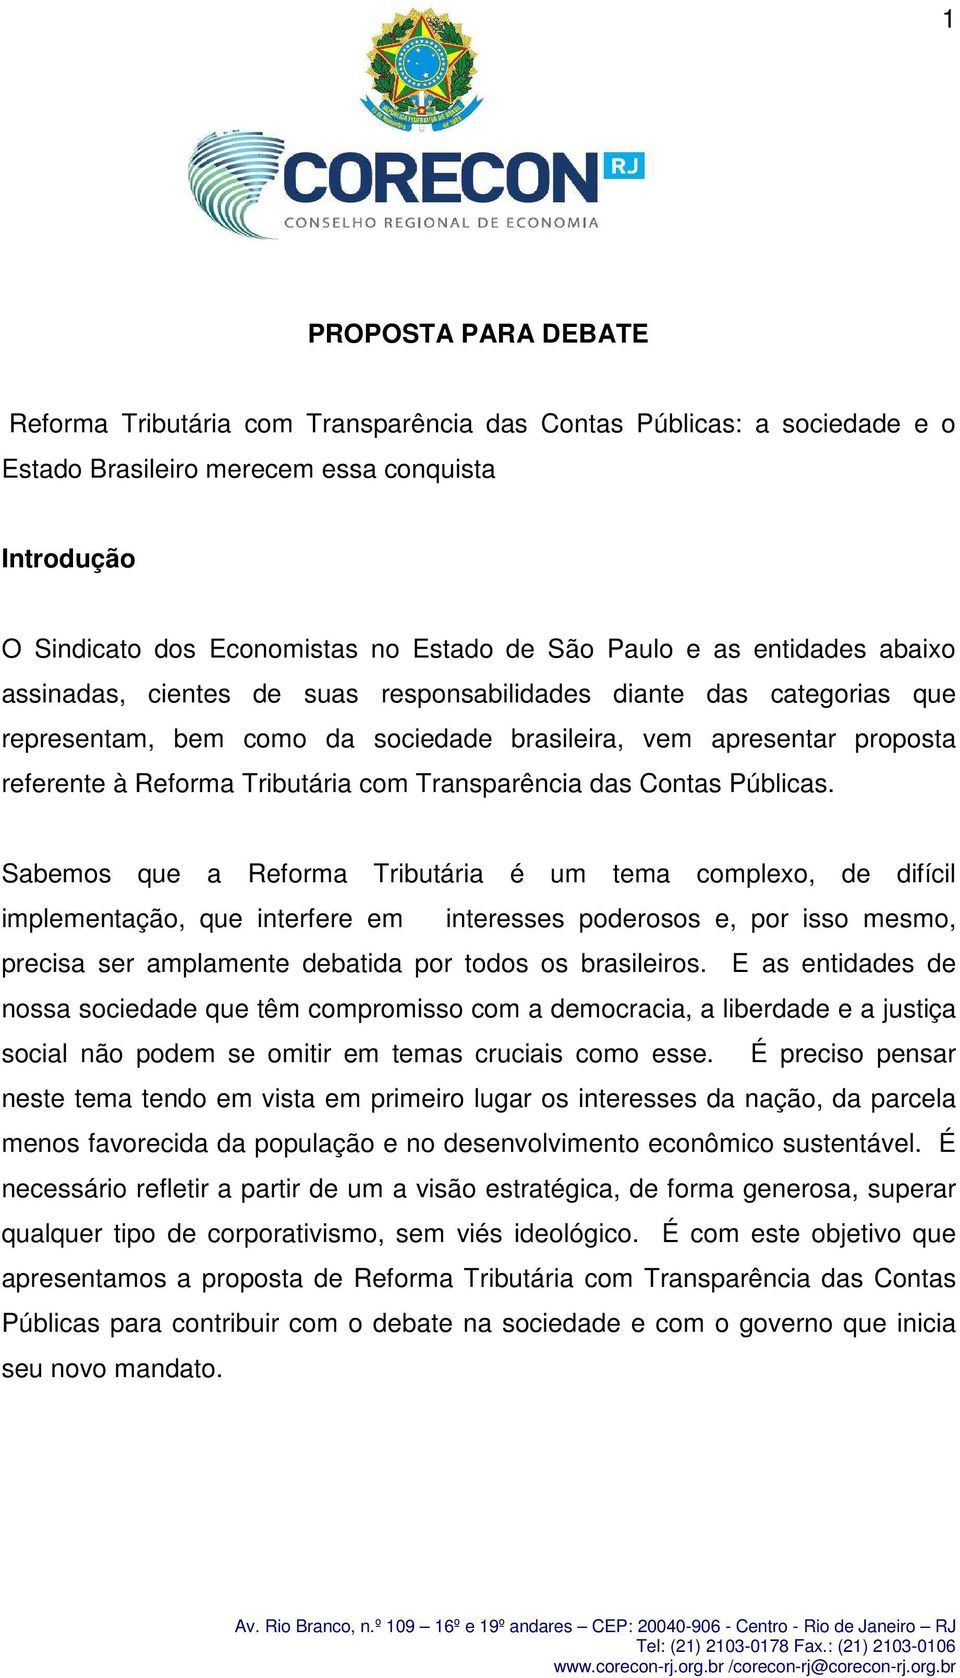 Transparência das Contas Públicas.